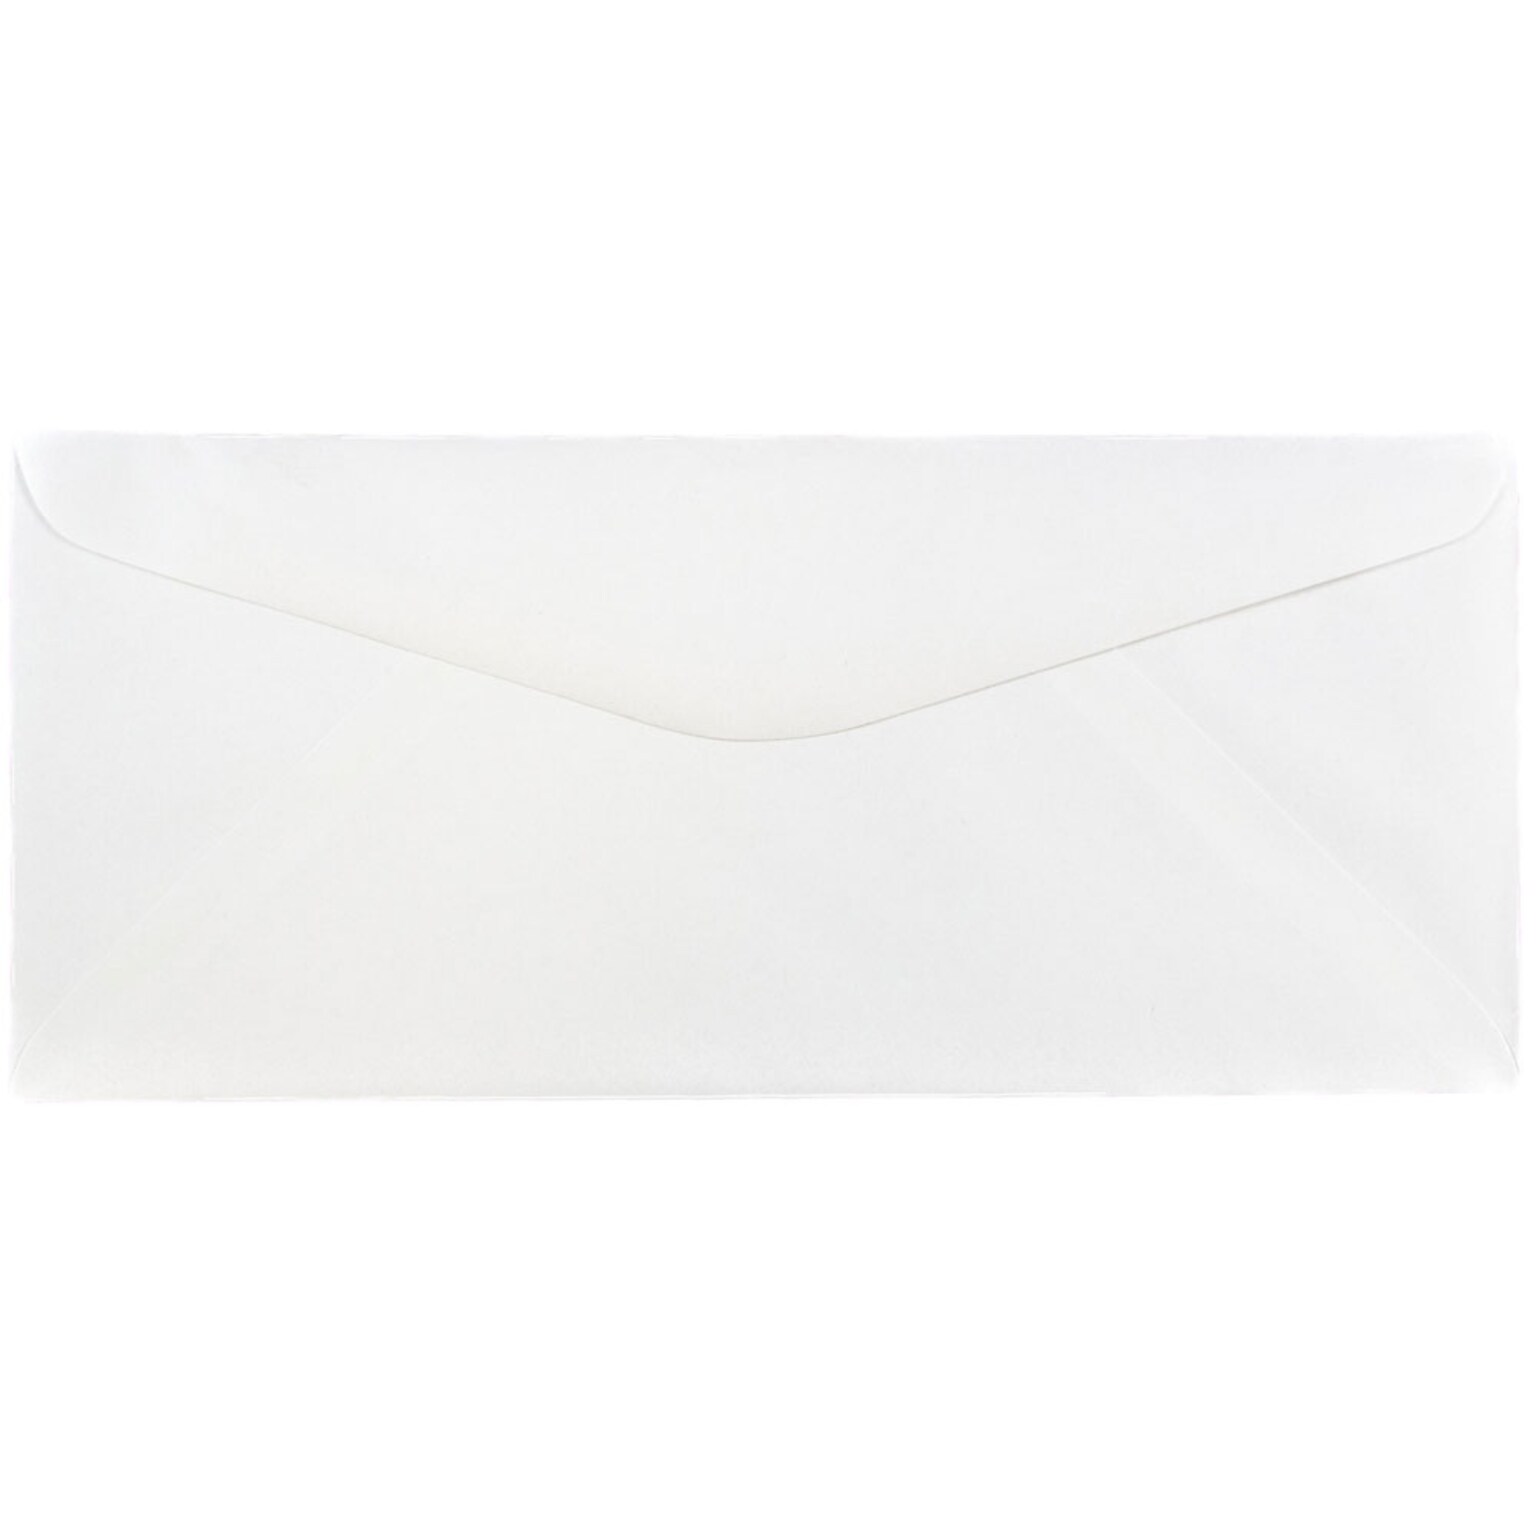 JAM Paper #14 Business Envelope, 5 x 11 1/2, White, 25/Pack (53273)